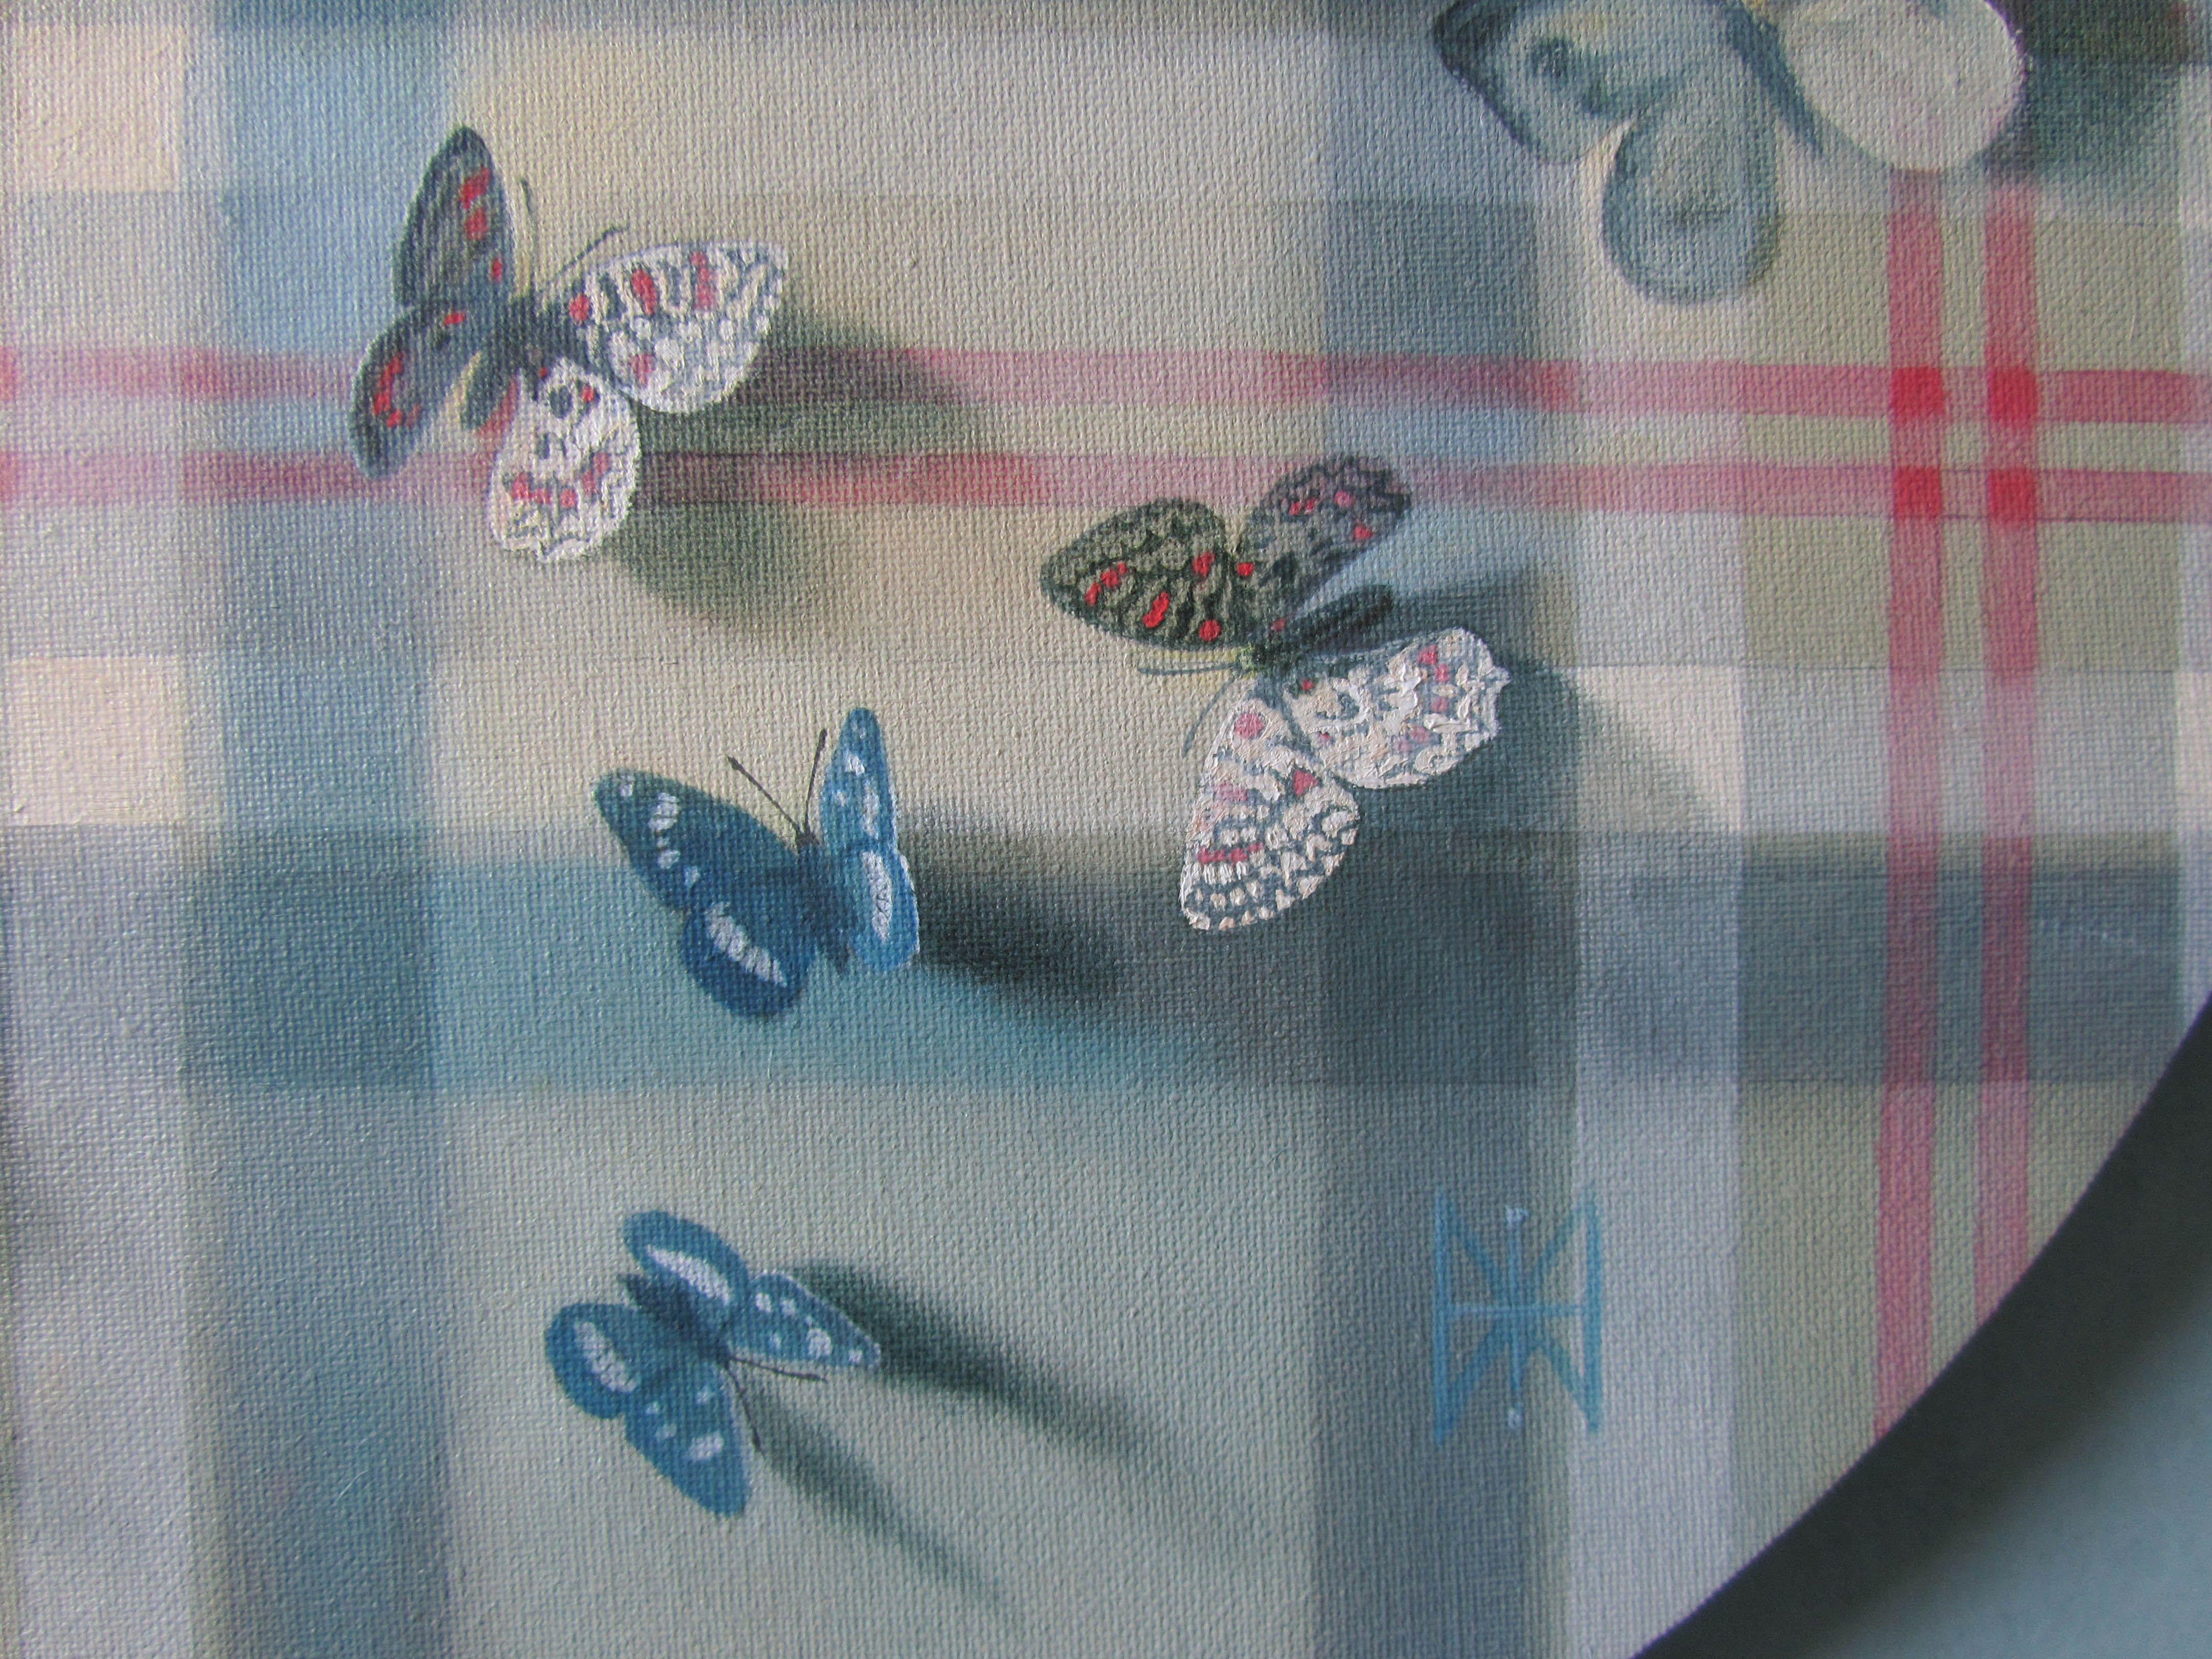 Butterflies on tartan pattern, Painting, Oil on Canvas 2